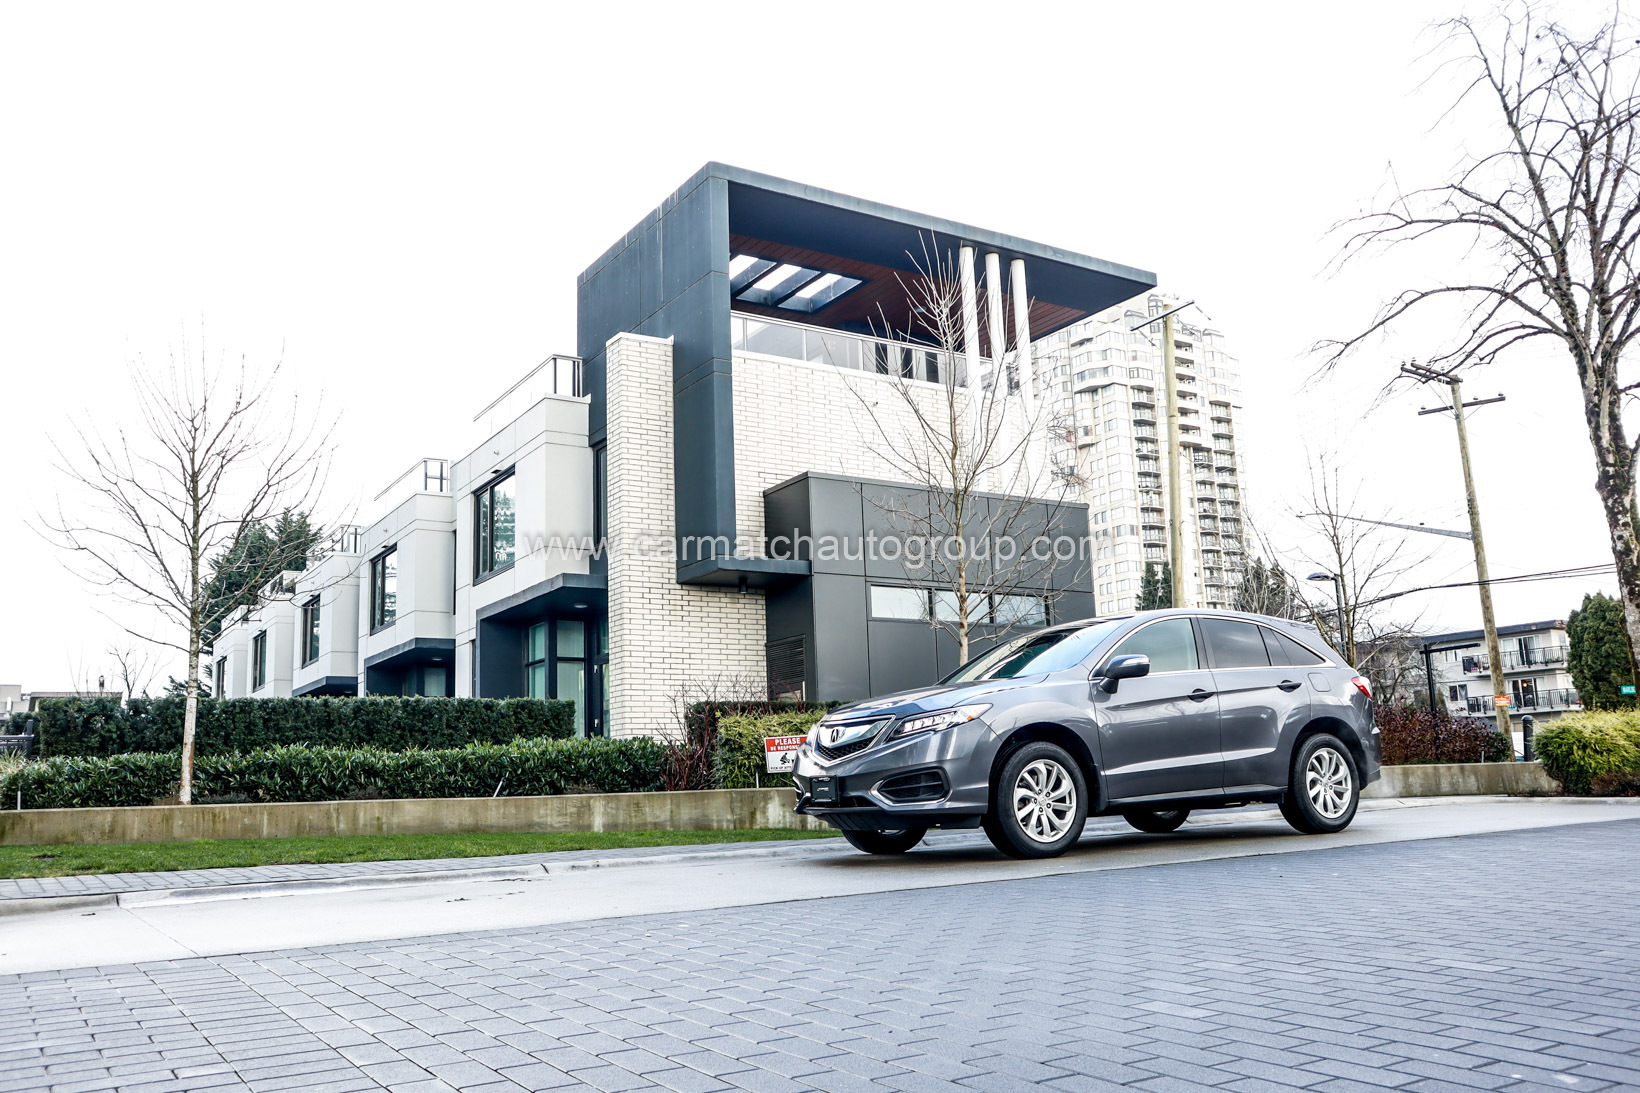 2016 Acura RDX AWD 4dr Tech Pkg